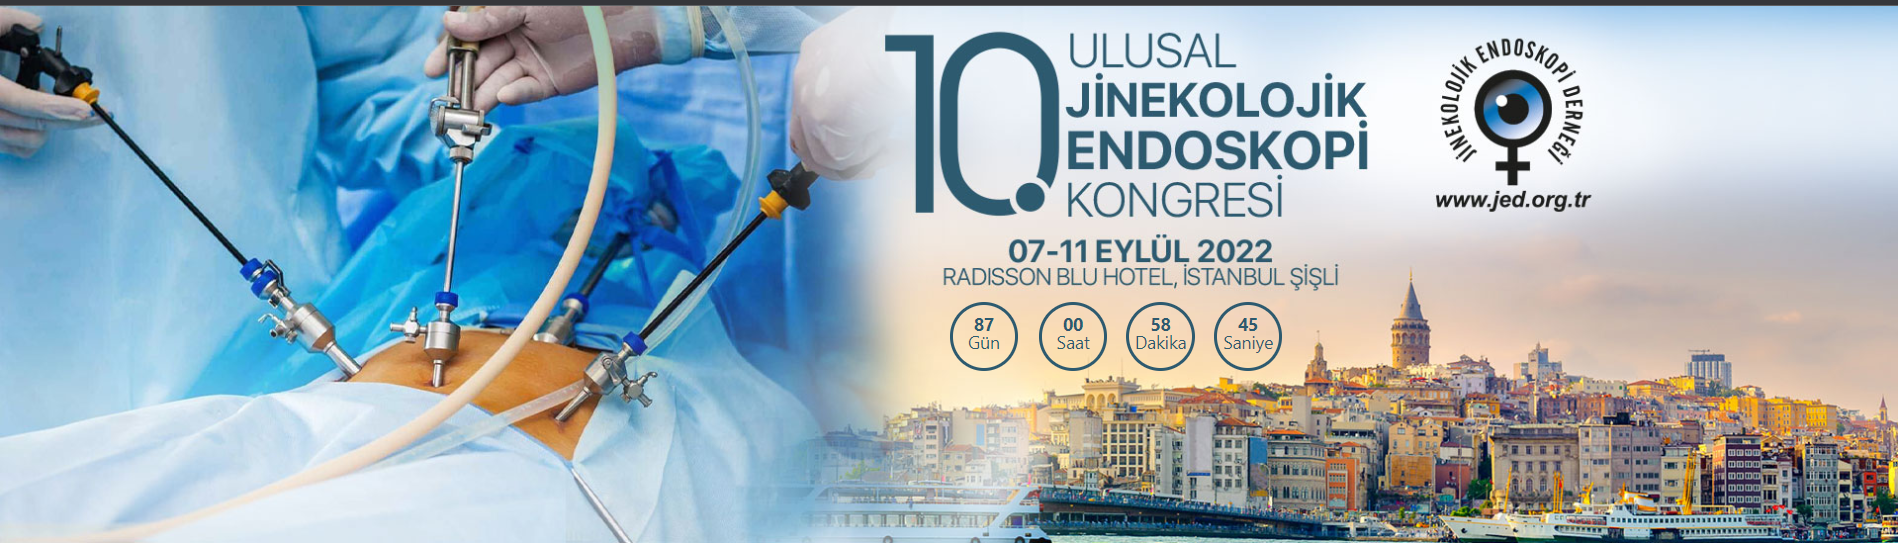 10. Ulusal Jinekolojik Endoskopi Kongresi